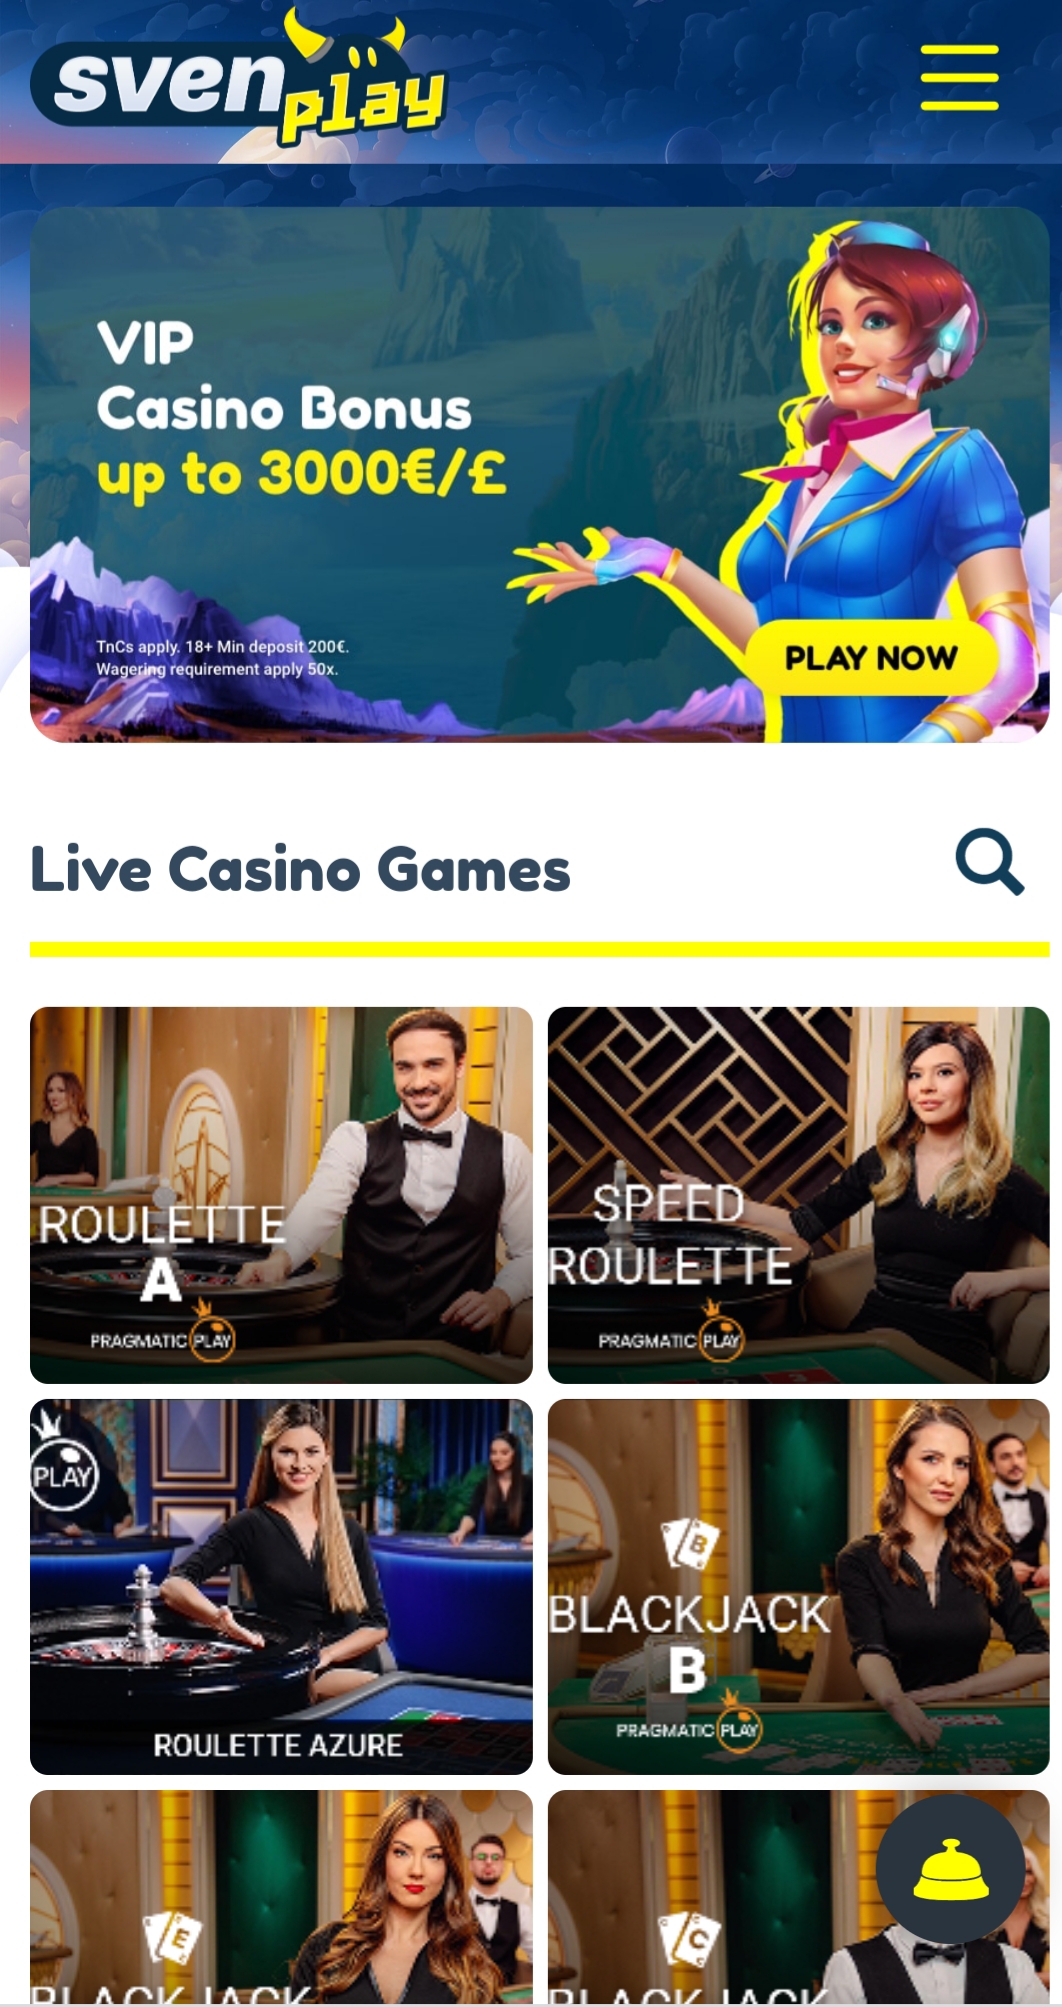 SvenPlay Casino Mobile Live Dealer Games Review